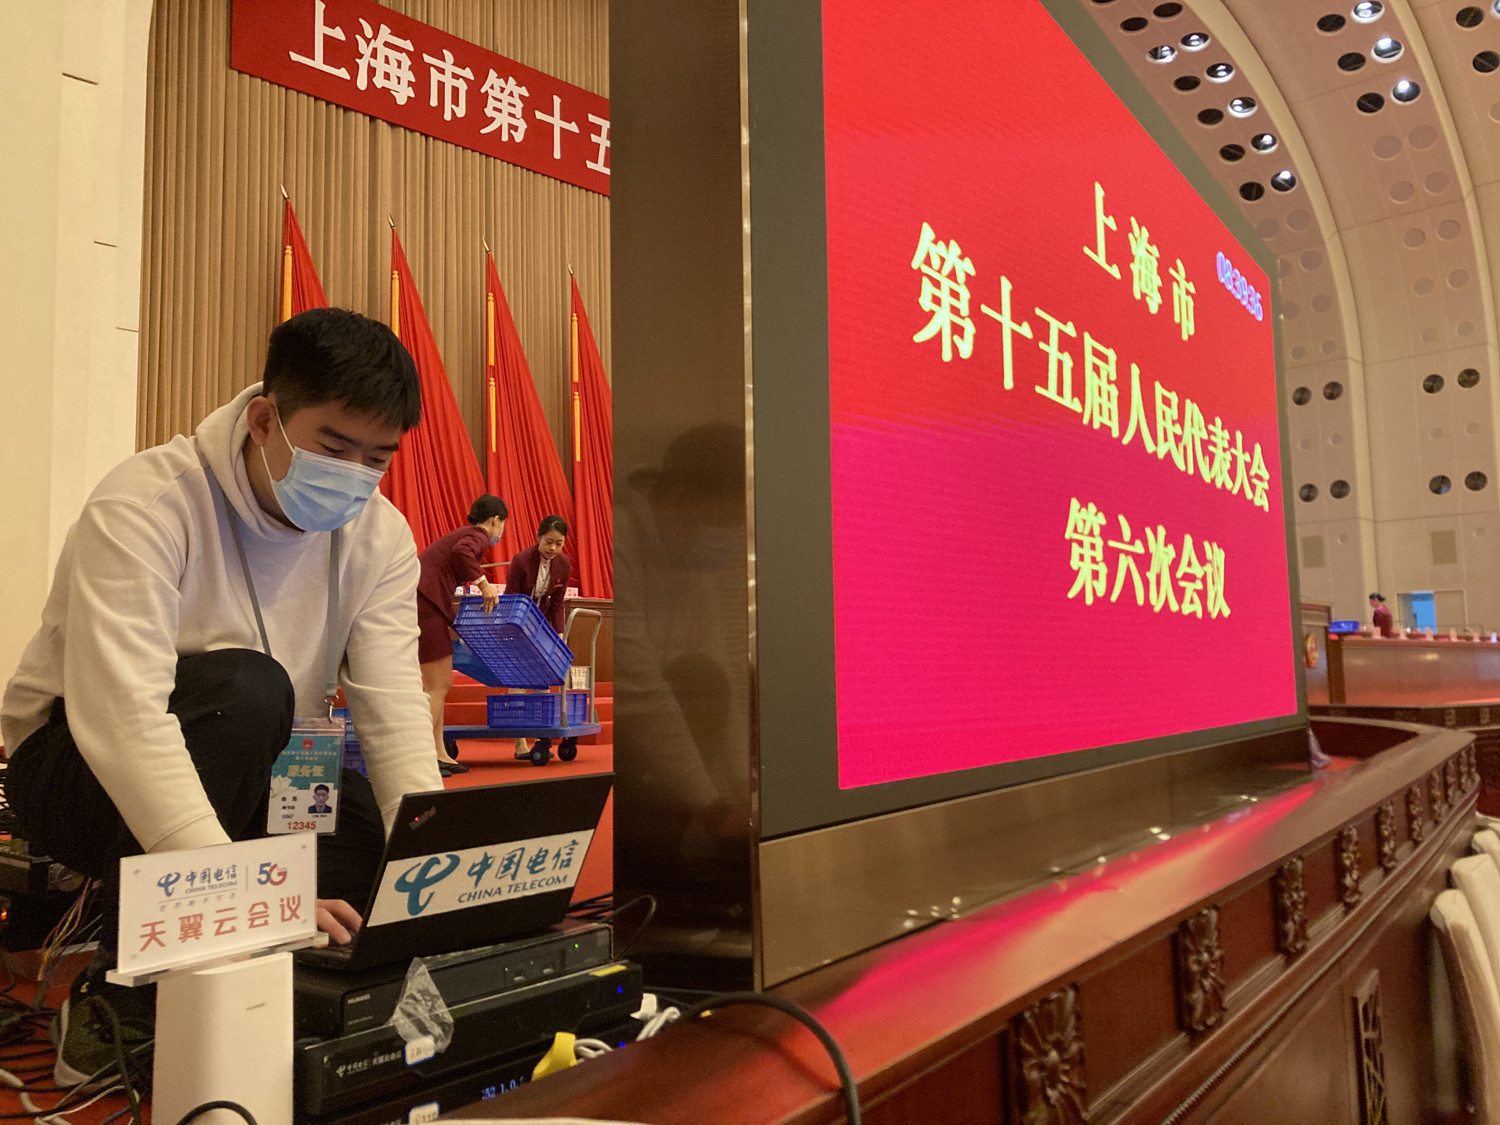 上海理想天翼云会议保障团队在2022年上海两会现场，为人大市民旁听席提供视频直播技术服务。图一